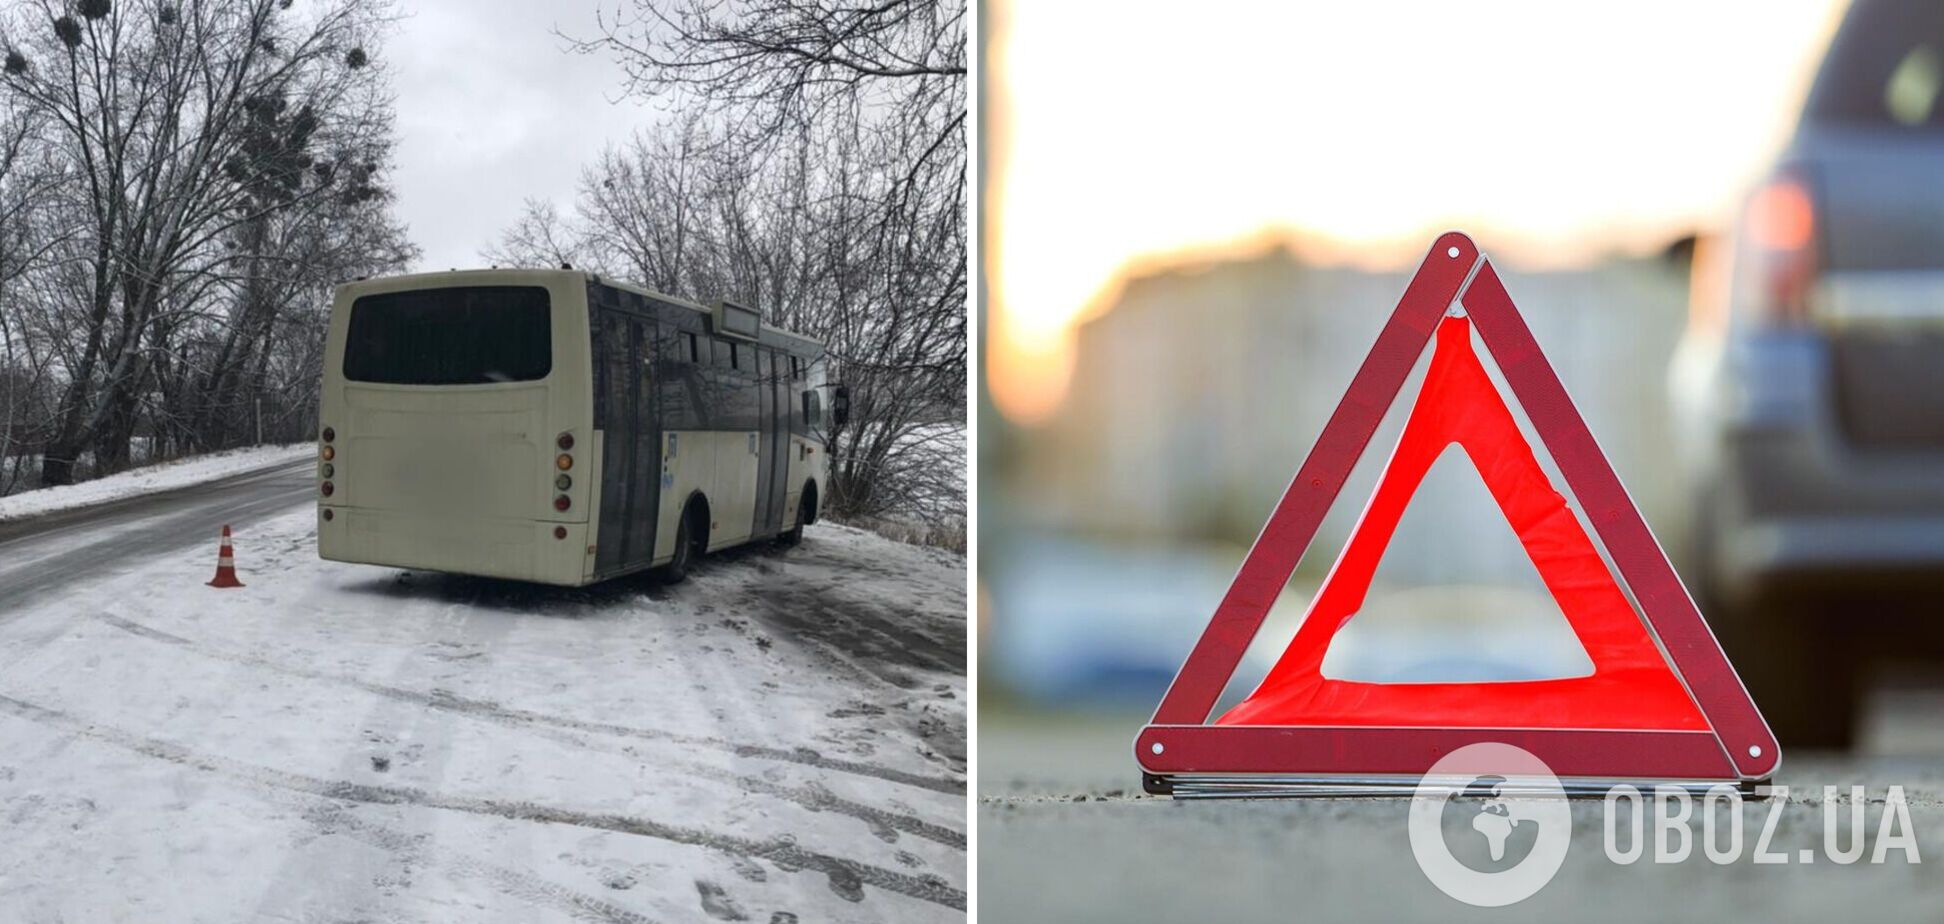 Автобус сбил пешехода-пенсионера